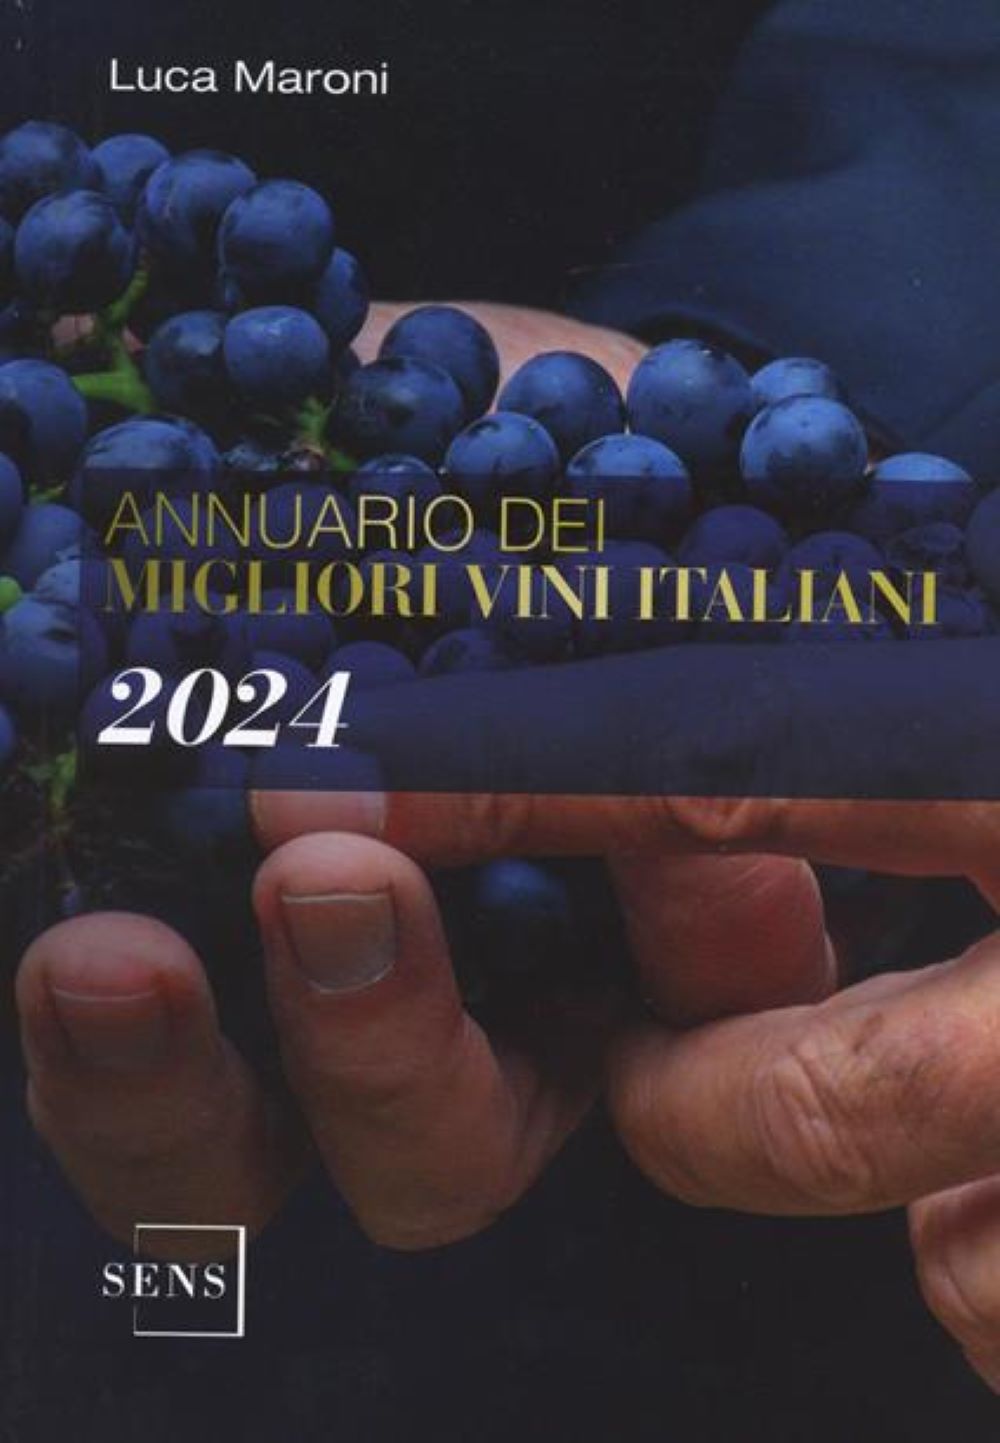 Annuario Dei Migliori Vini Italiani 2024 di Luca Maroni – Recensione